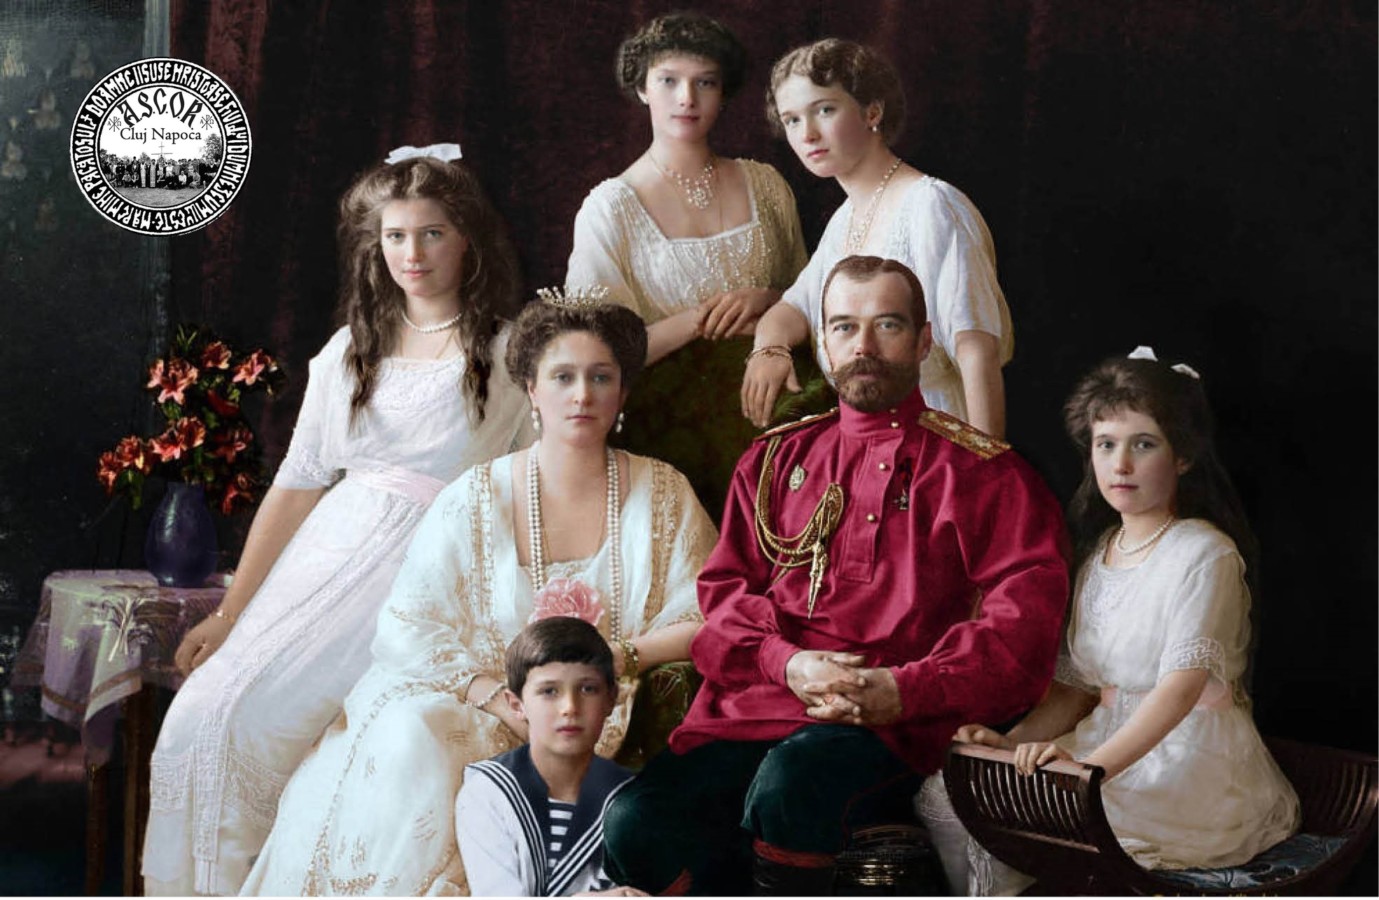 Expoziția de fotografie documentară „Ultimul Împărat – Cele mai frumoase amintiri ale Romanovilor”, de hram la Biserica studenţilor